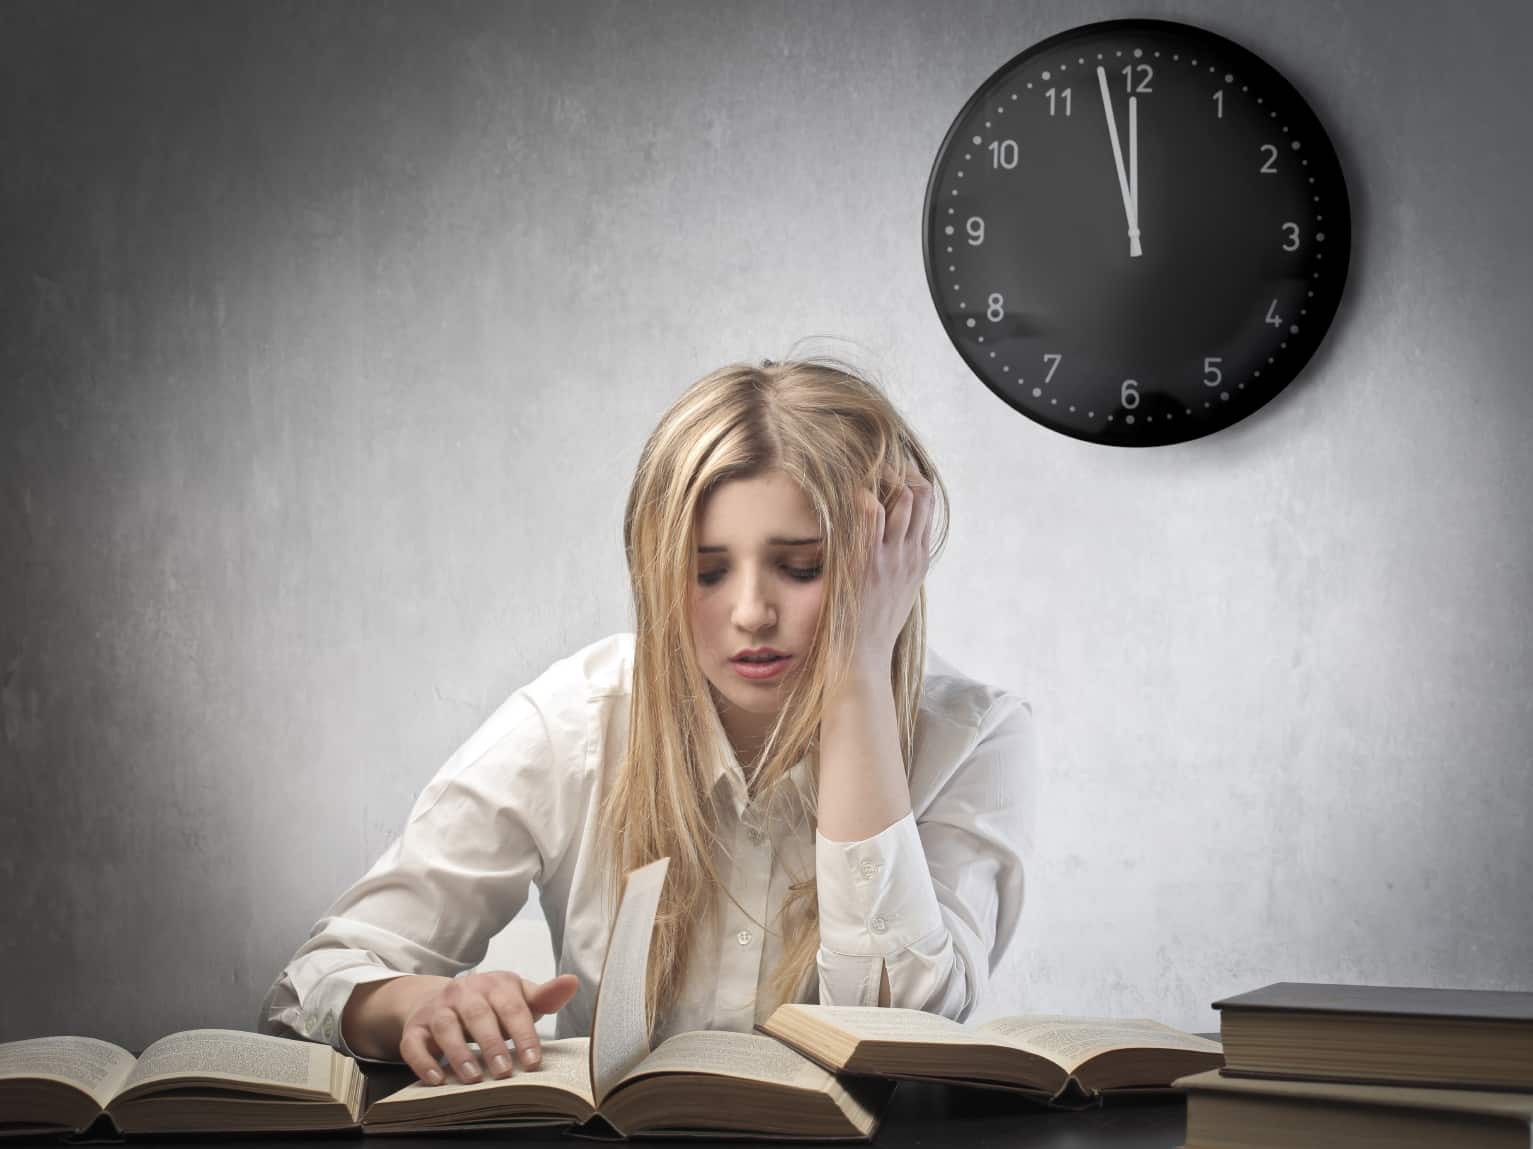 Việc thường xuyên thức khuya học bài có thể gây những ảnh hưởng xấu đến sức khỏe và tinh thần của bạn